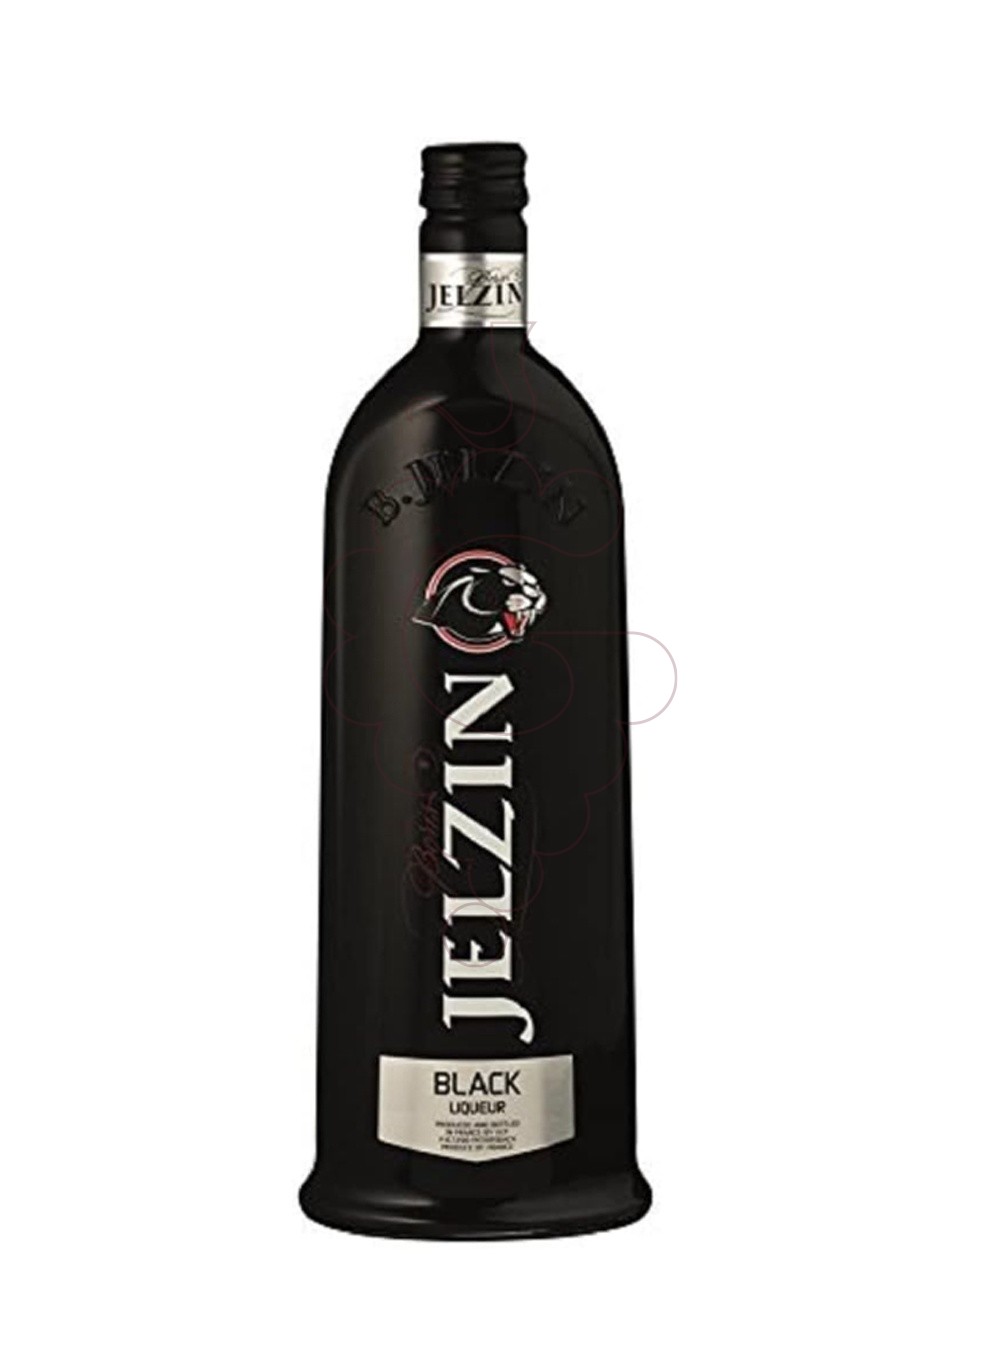 Foto Licor Jelzin pure black liqueur 70cl